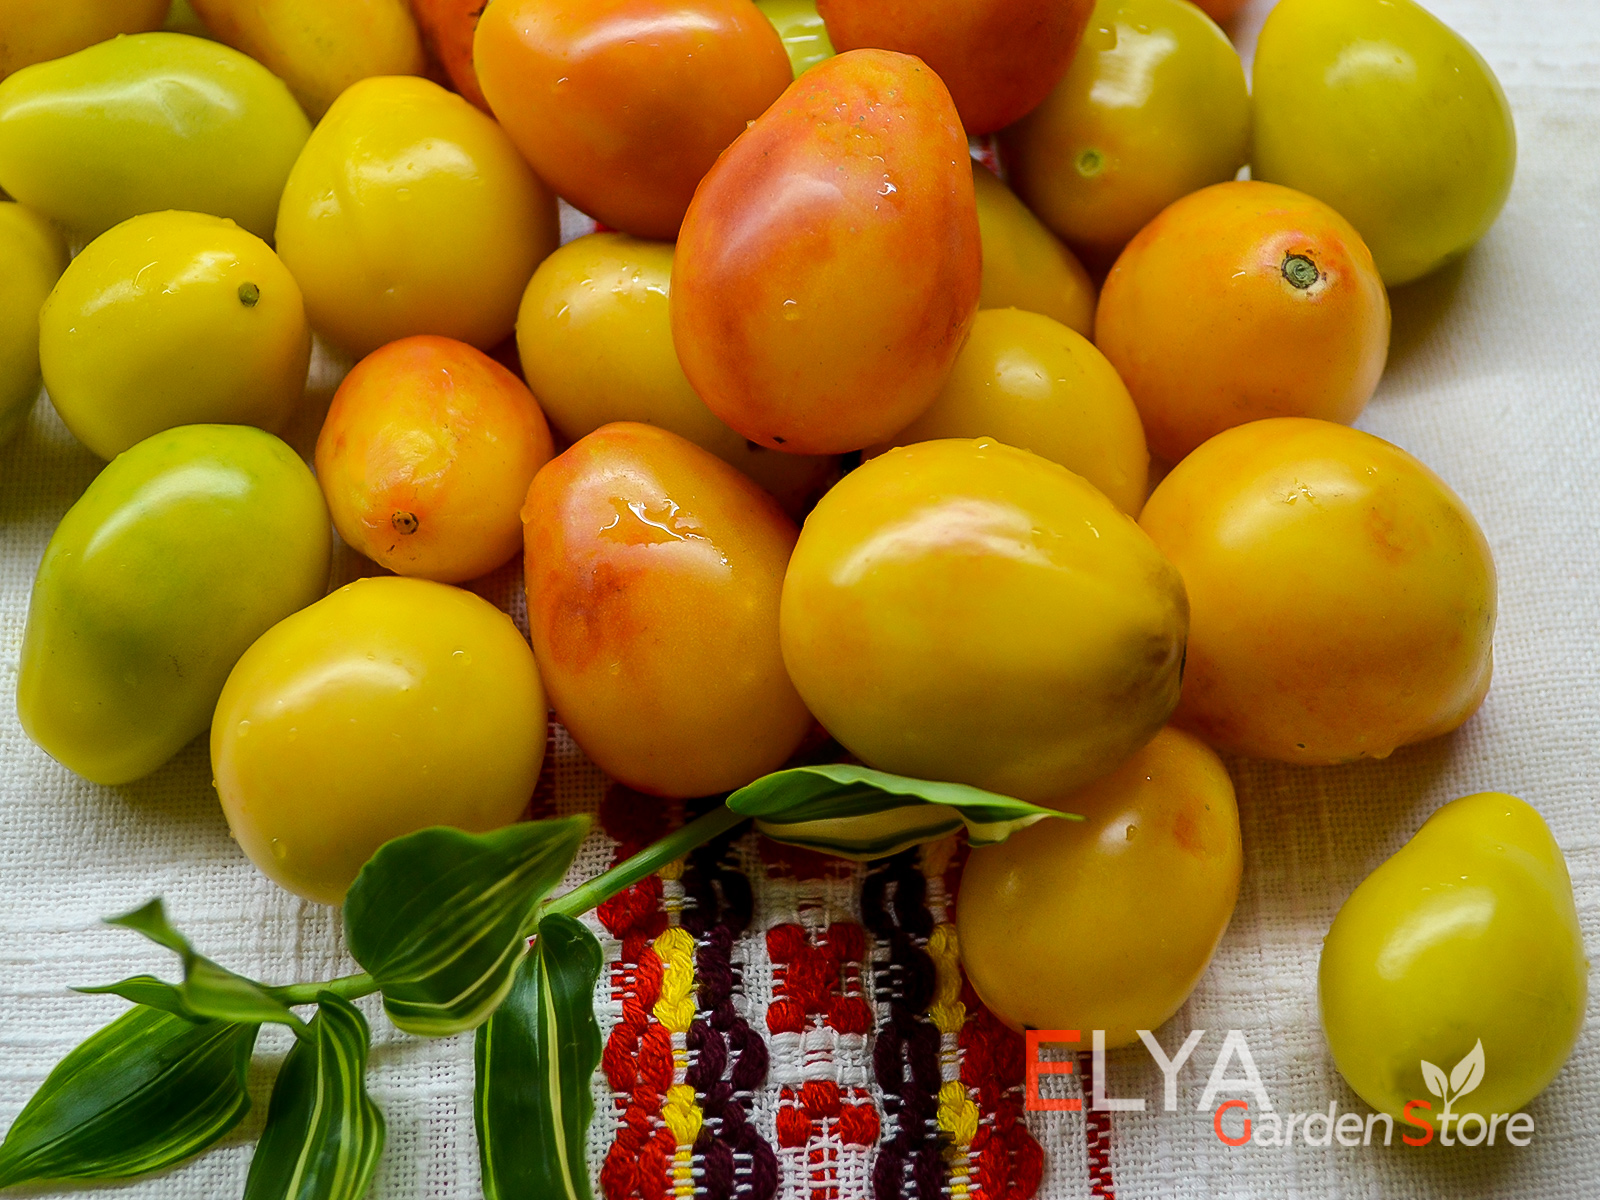 Предгорная Груша - великолепный коктейльный сорт томата с хорошим вкусом, урожайный - фото магазина семян Elya Garden 